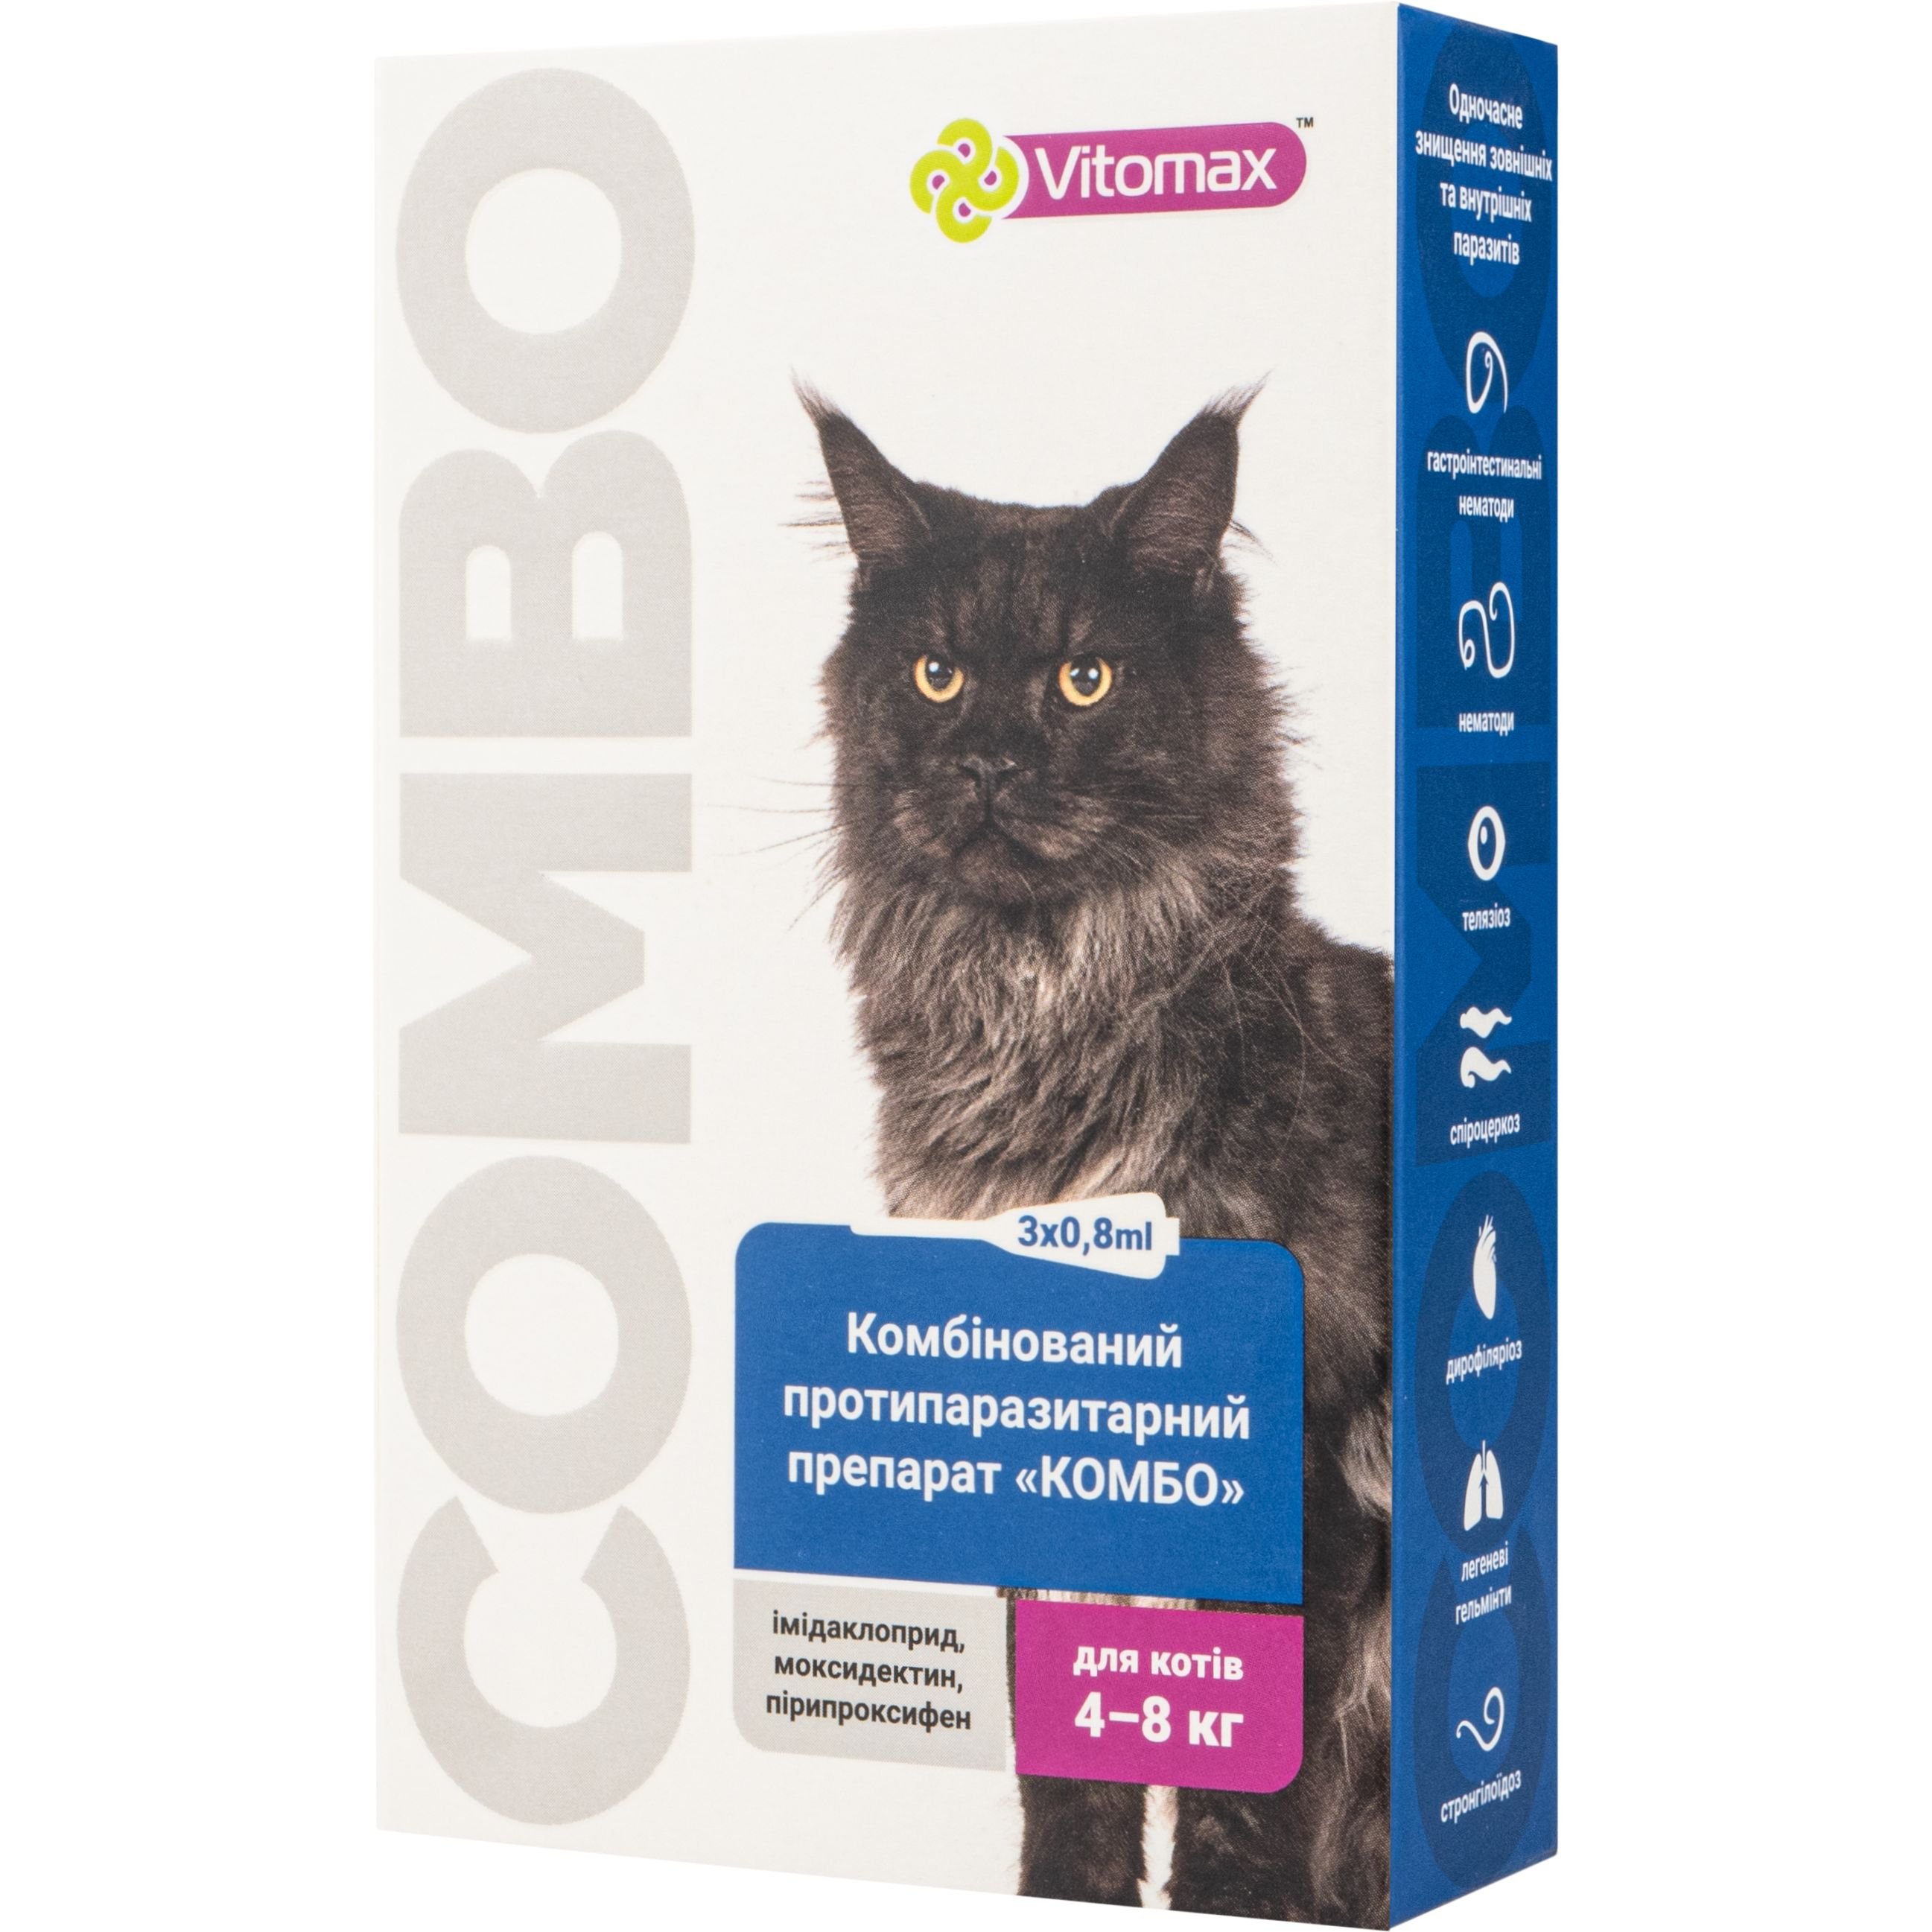 Капли Vitomax комбо для кошек 4 - 8 кг, 0.8 мл, 3 шт. - фото 2